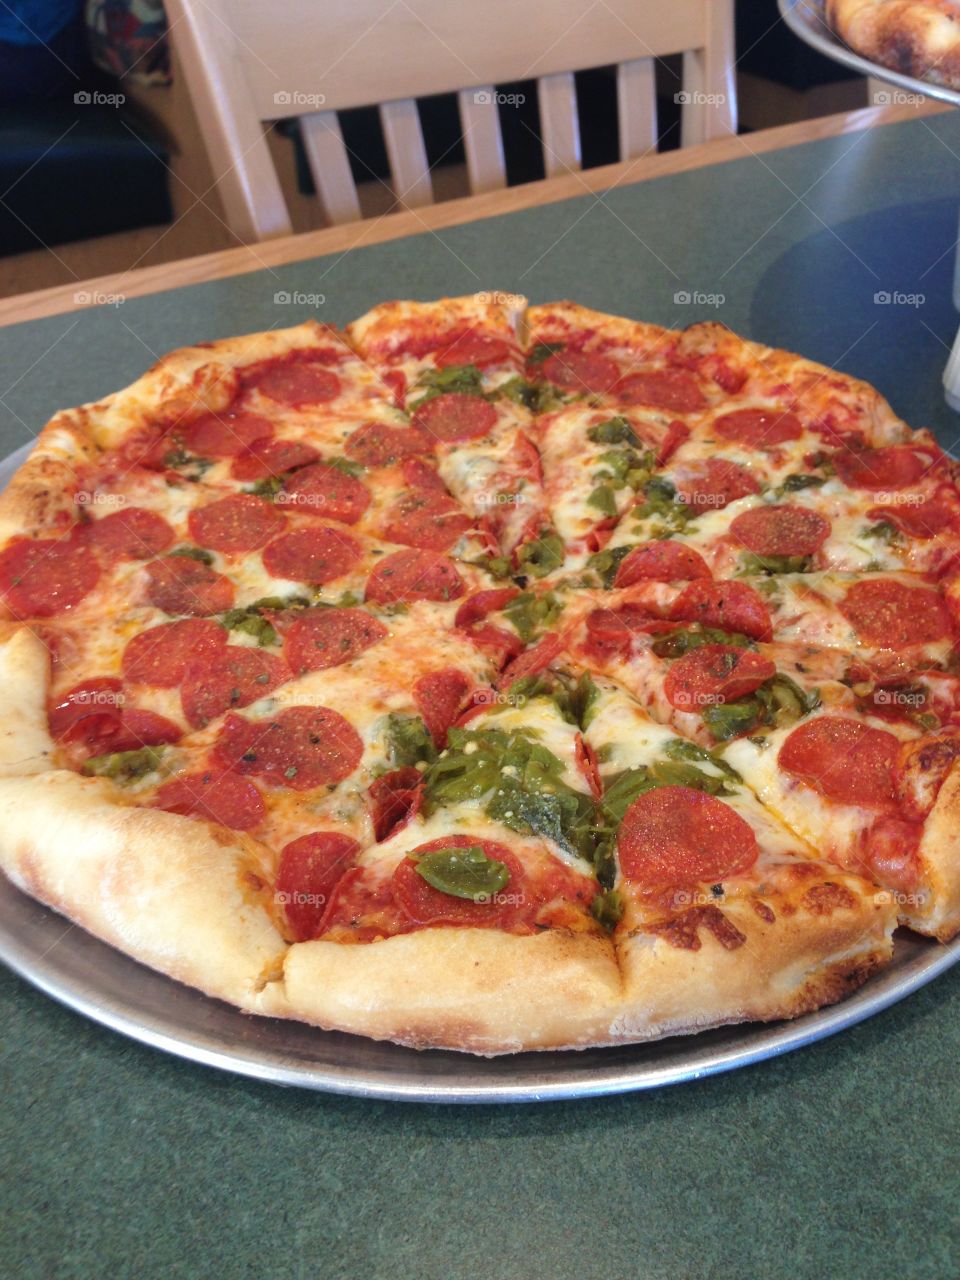 Green Chili Pepperoni Pizza. Wonderful Pizza